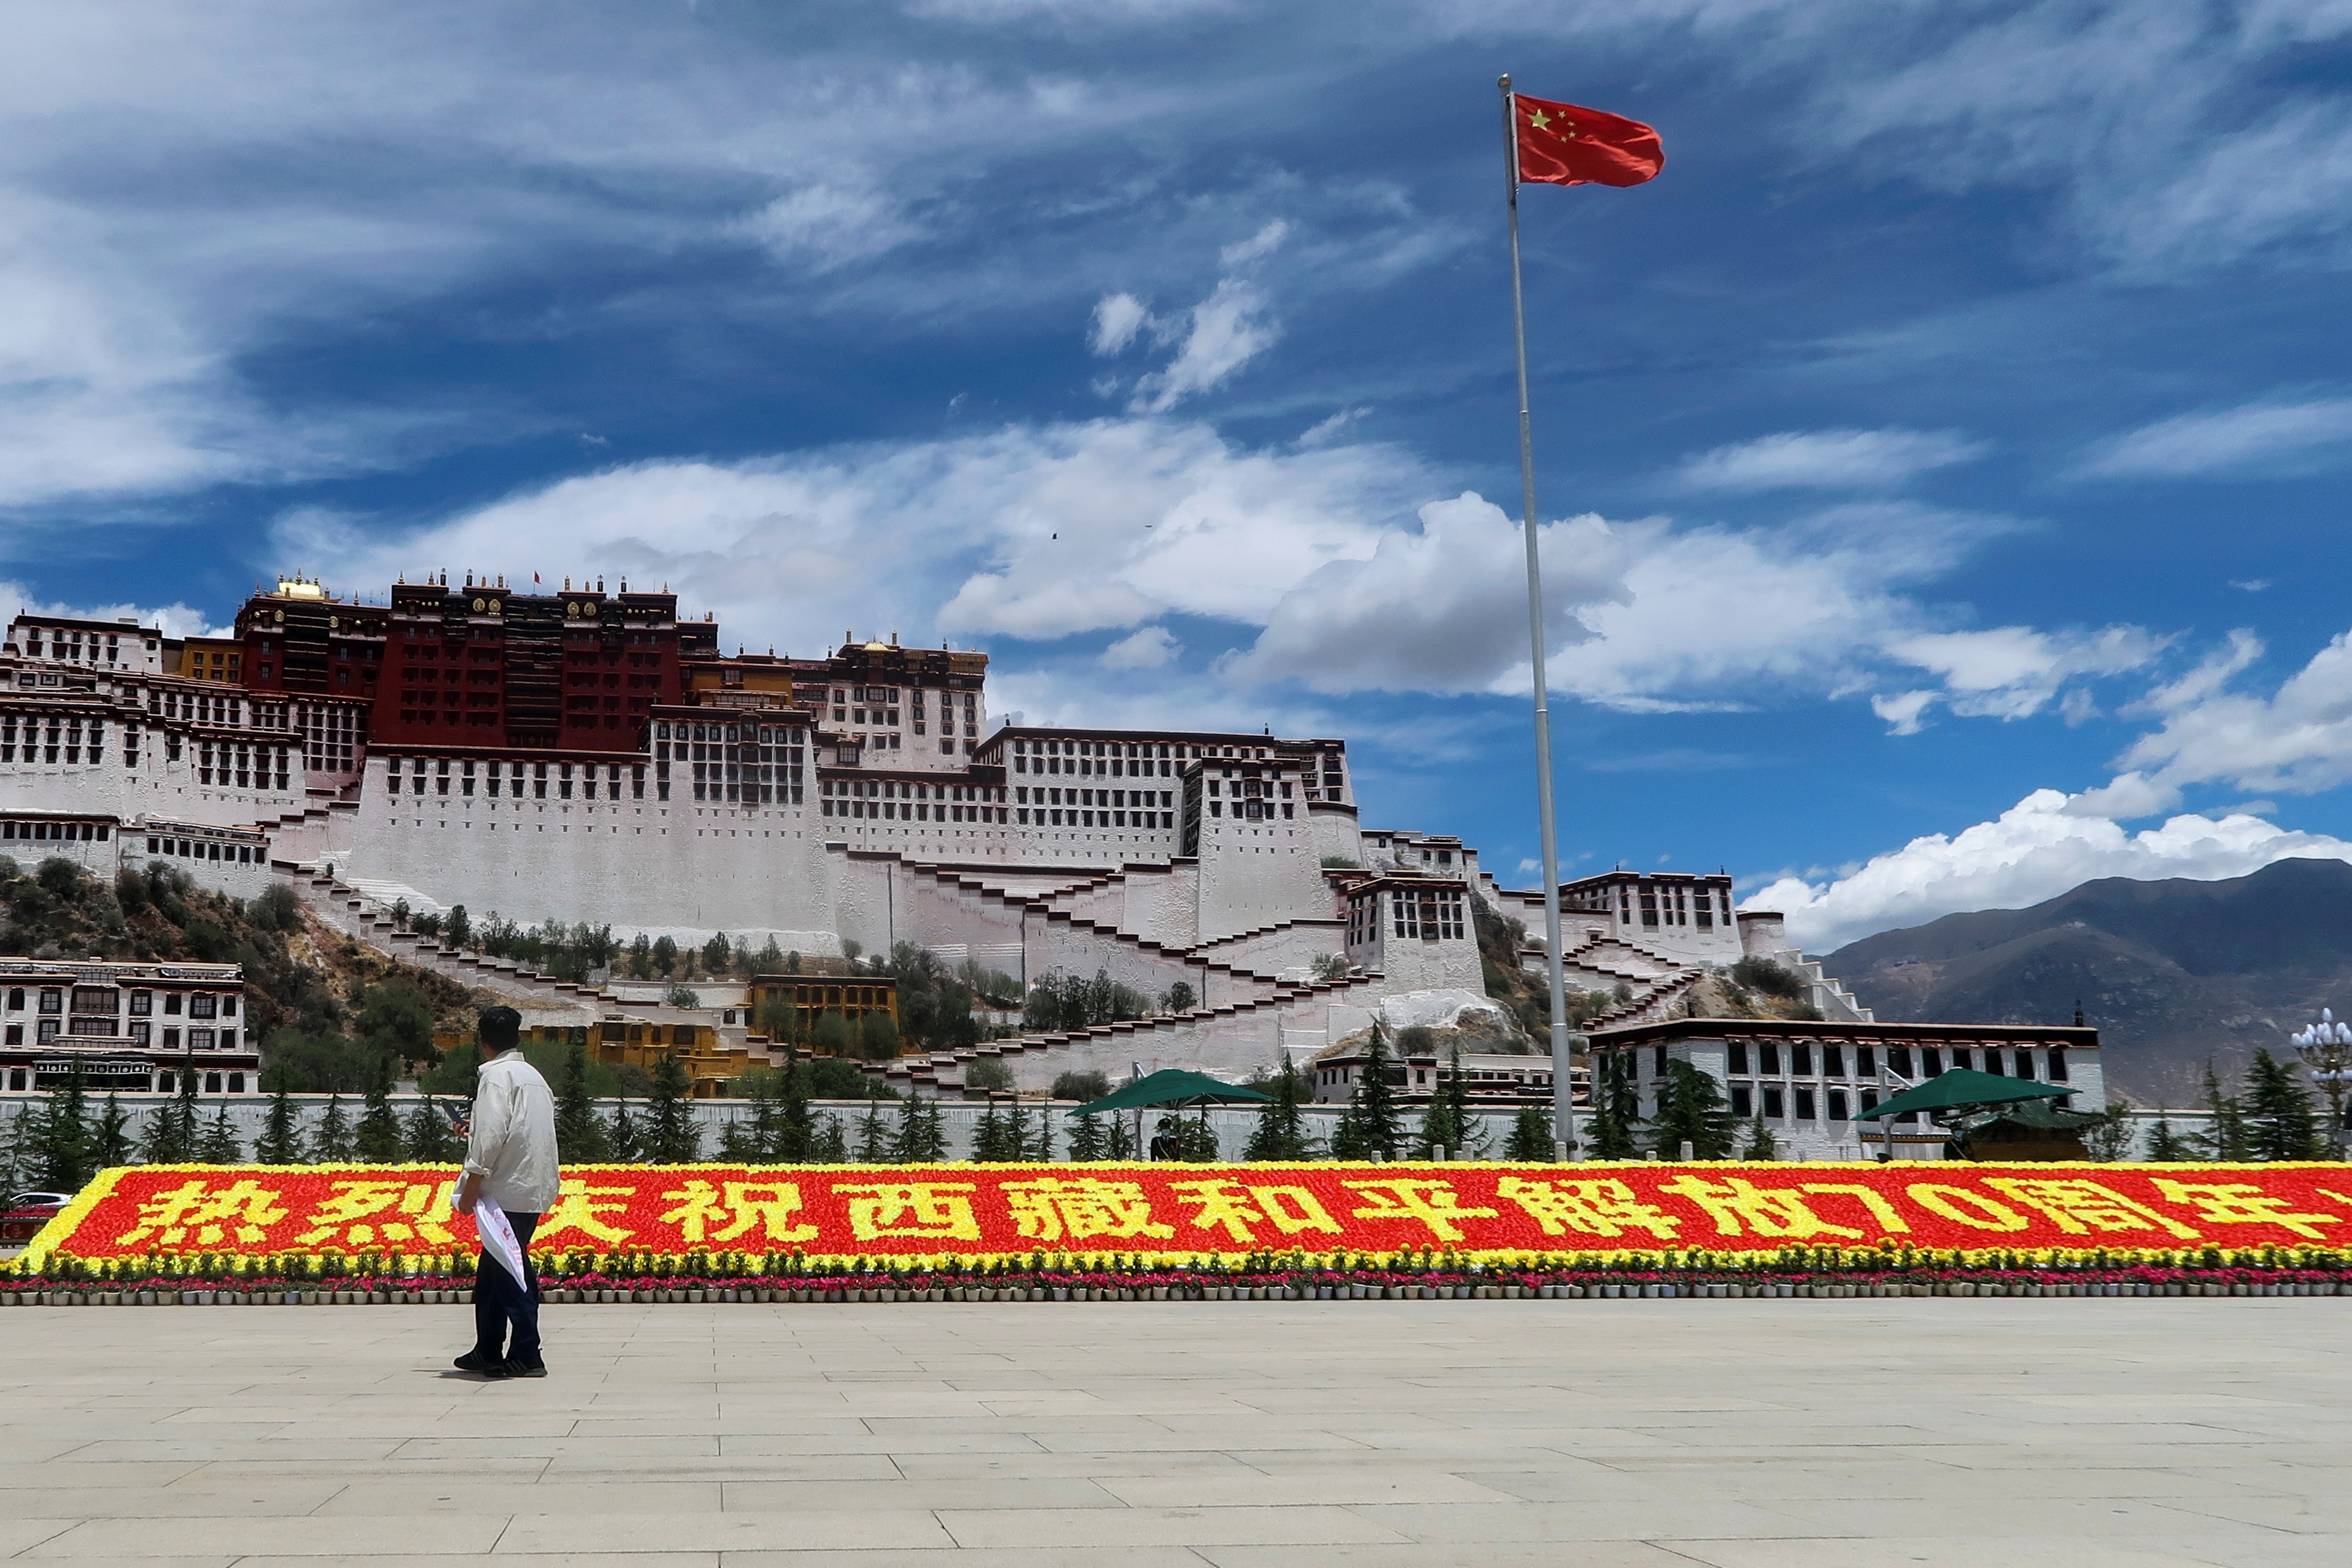 Monjes encarcelados y un legado cultural bajo amenaza: por qué avanza la represión china en el Tíbet